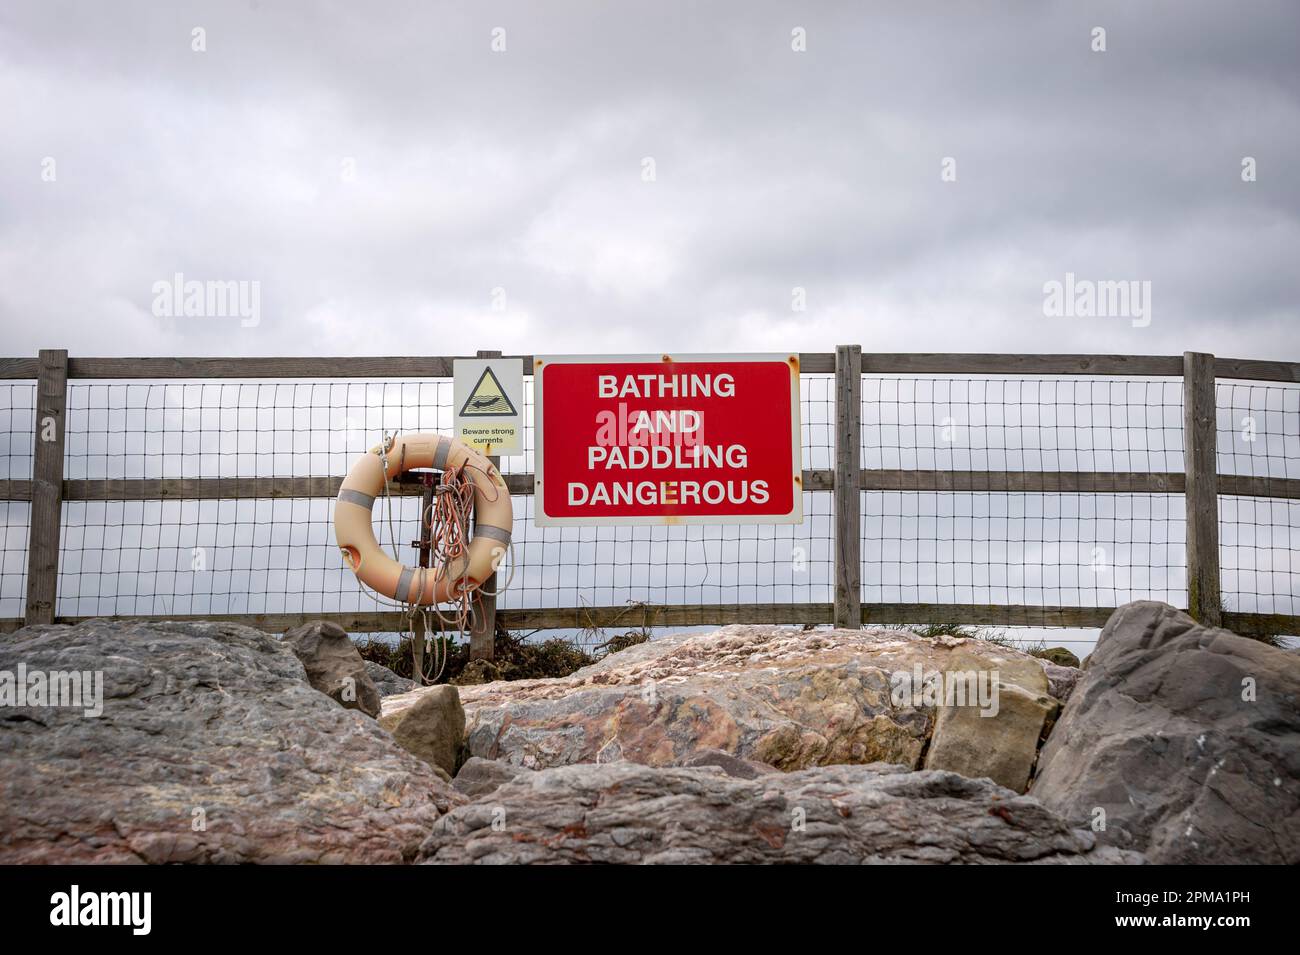 "Baden und Paddeln gefährlich" -Schild mit Rettungsboot Stockfoto